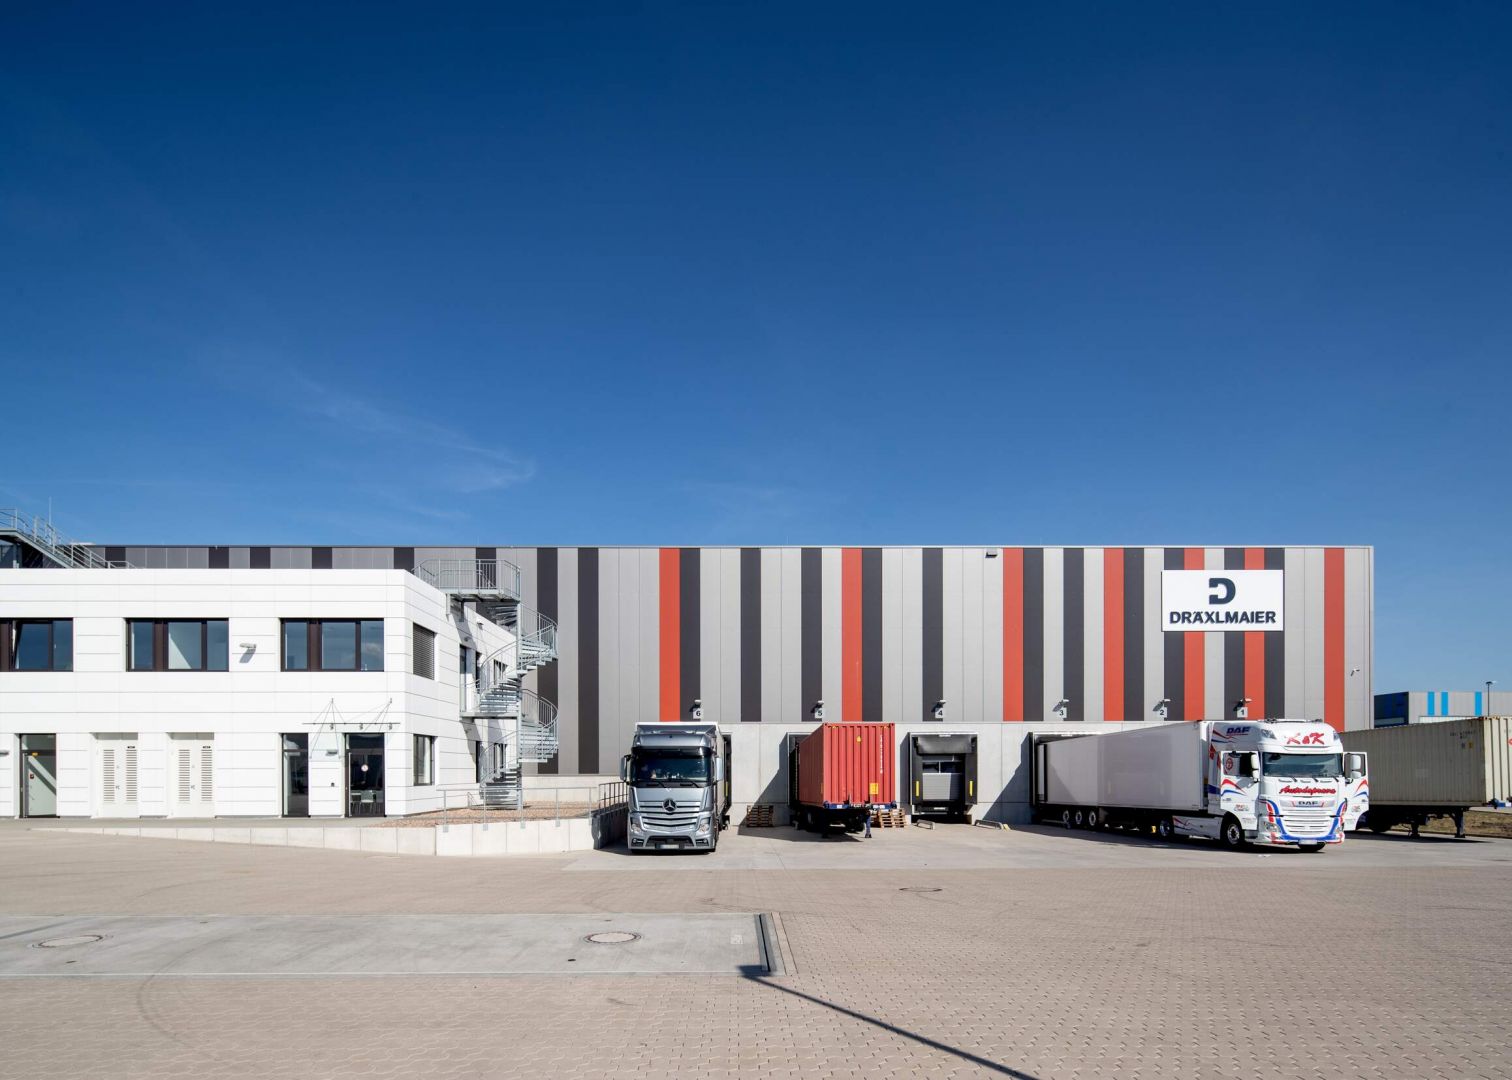 Frontansicht der Lagerhalle Hansalinie Bremen - Dräxlmaier. Zu sehen ist ein Teil des Gebäudes, das teilweise mit farbigen Streifen bemalt ist, davor sind die Luken zum Entladen der LKWs zu sehen, an denen teilweise auch LKWs geparkt sind.